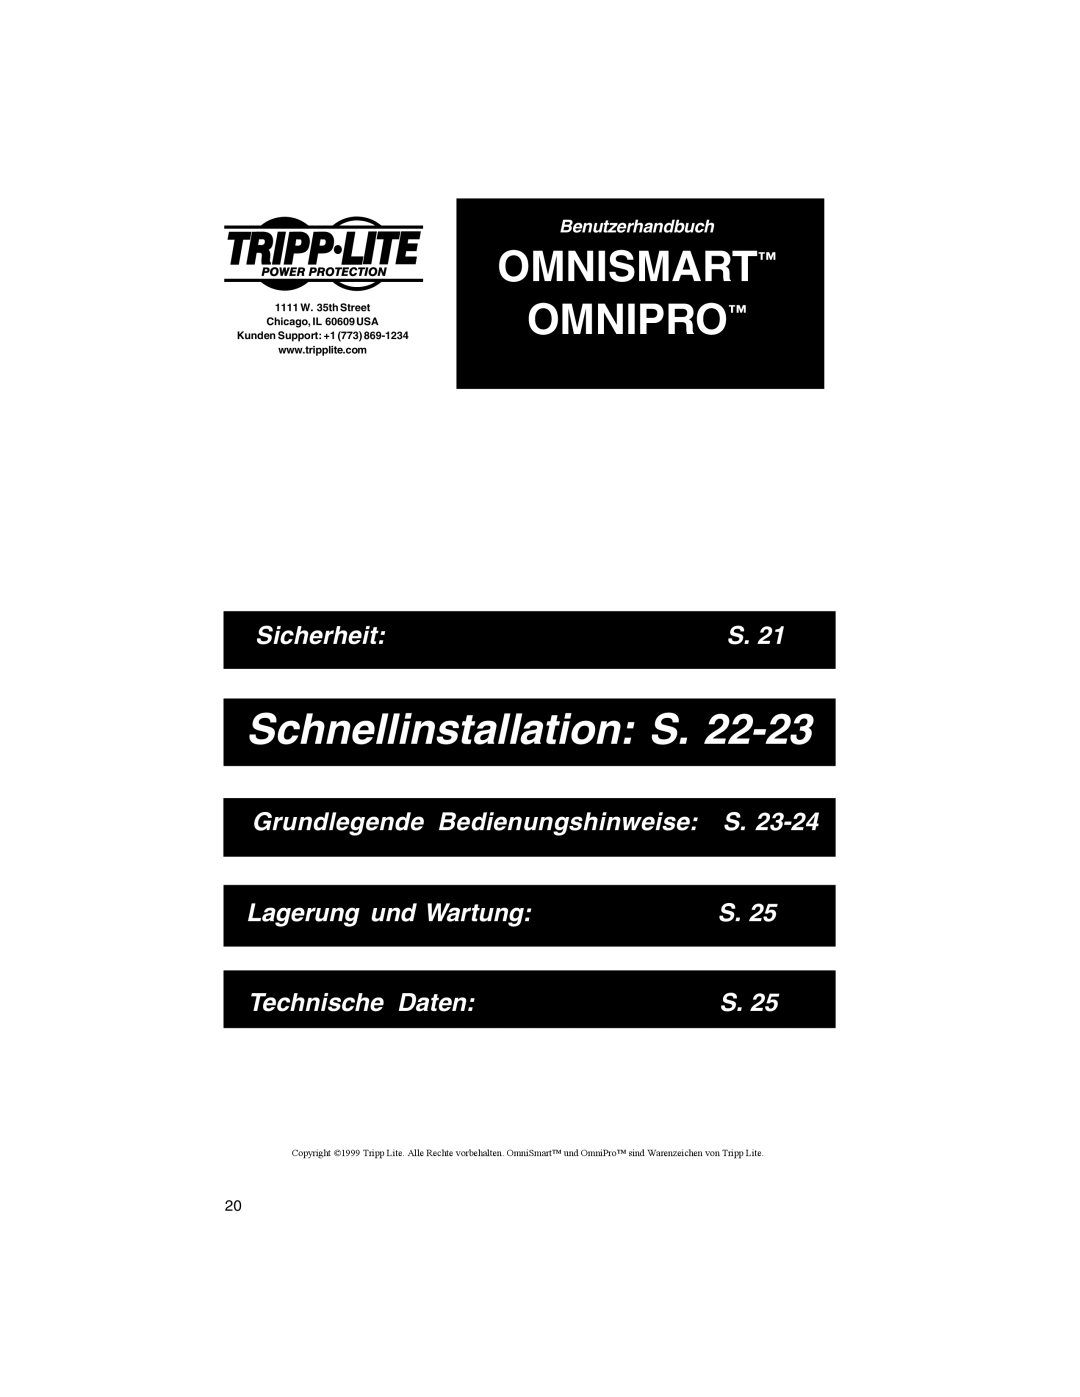 Tripp Lite OMNIPRO owner manual Schnellinstallation S, Sicherheit, Grundlegende Bedienungshinweise S, Lagerung und Wartung 